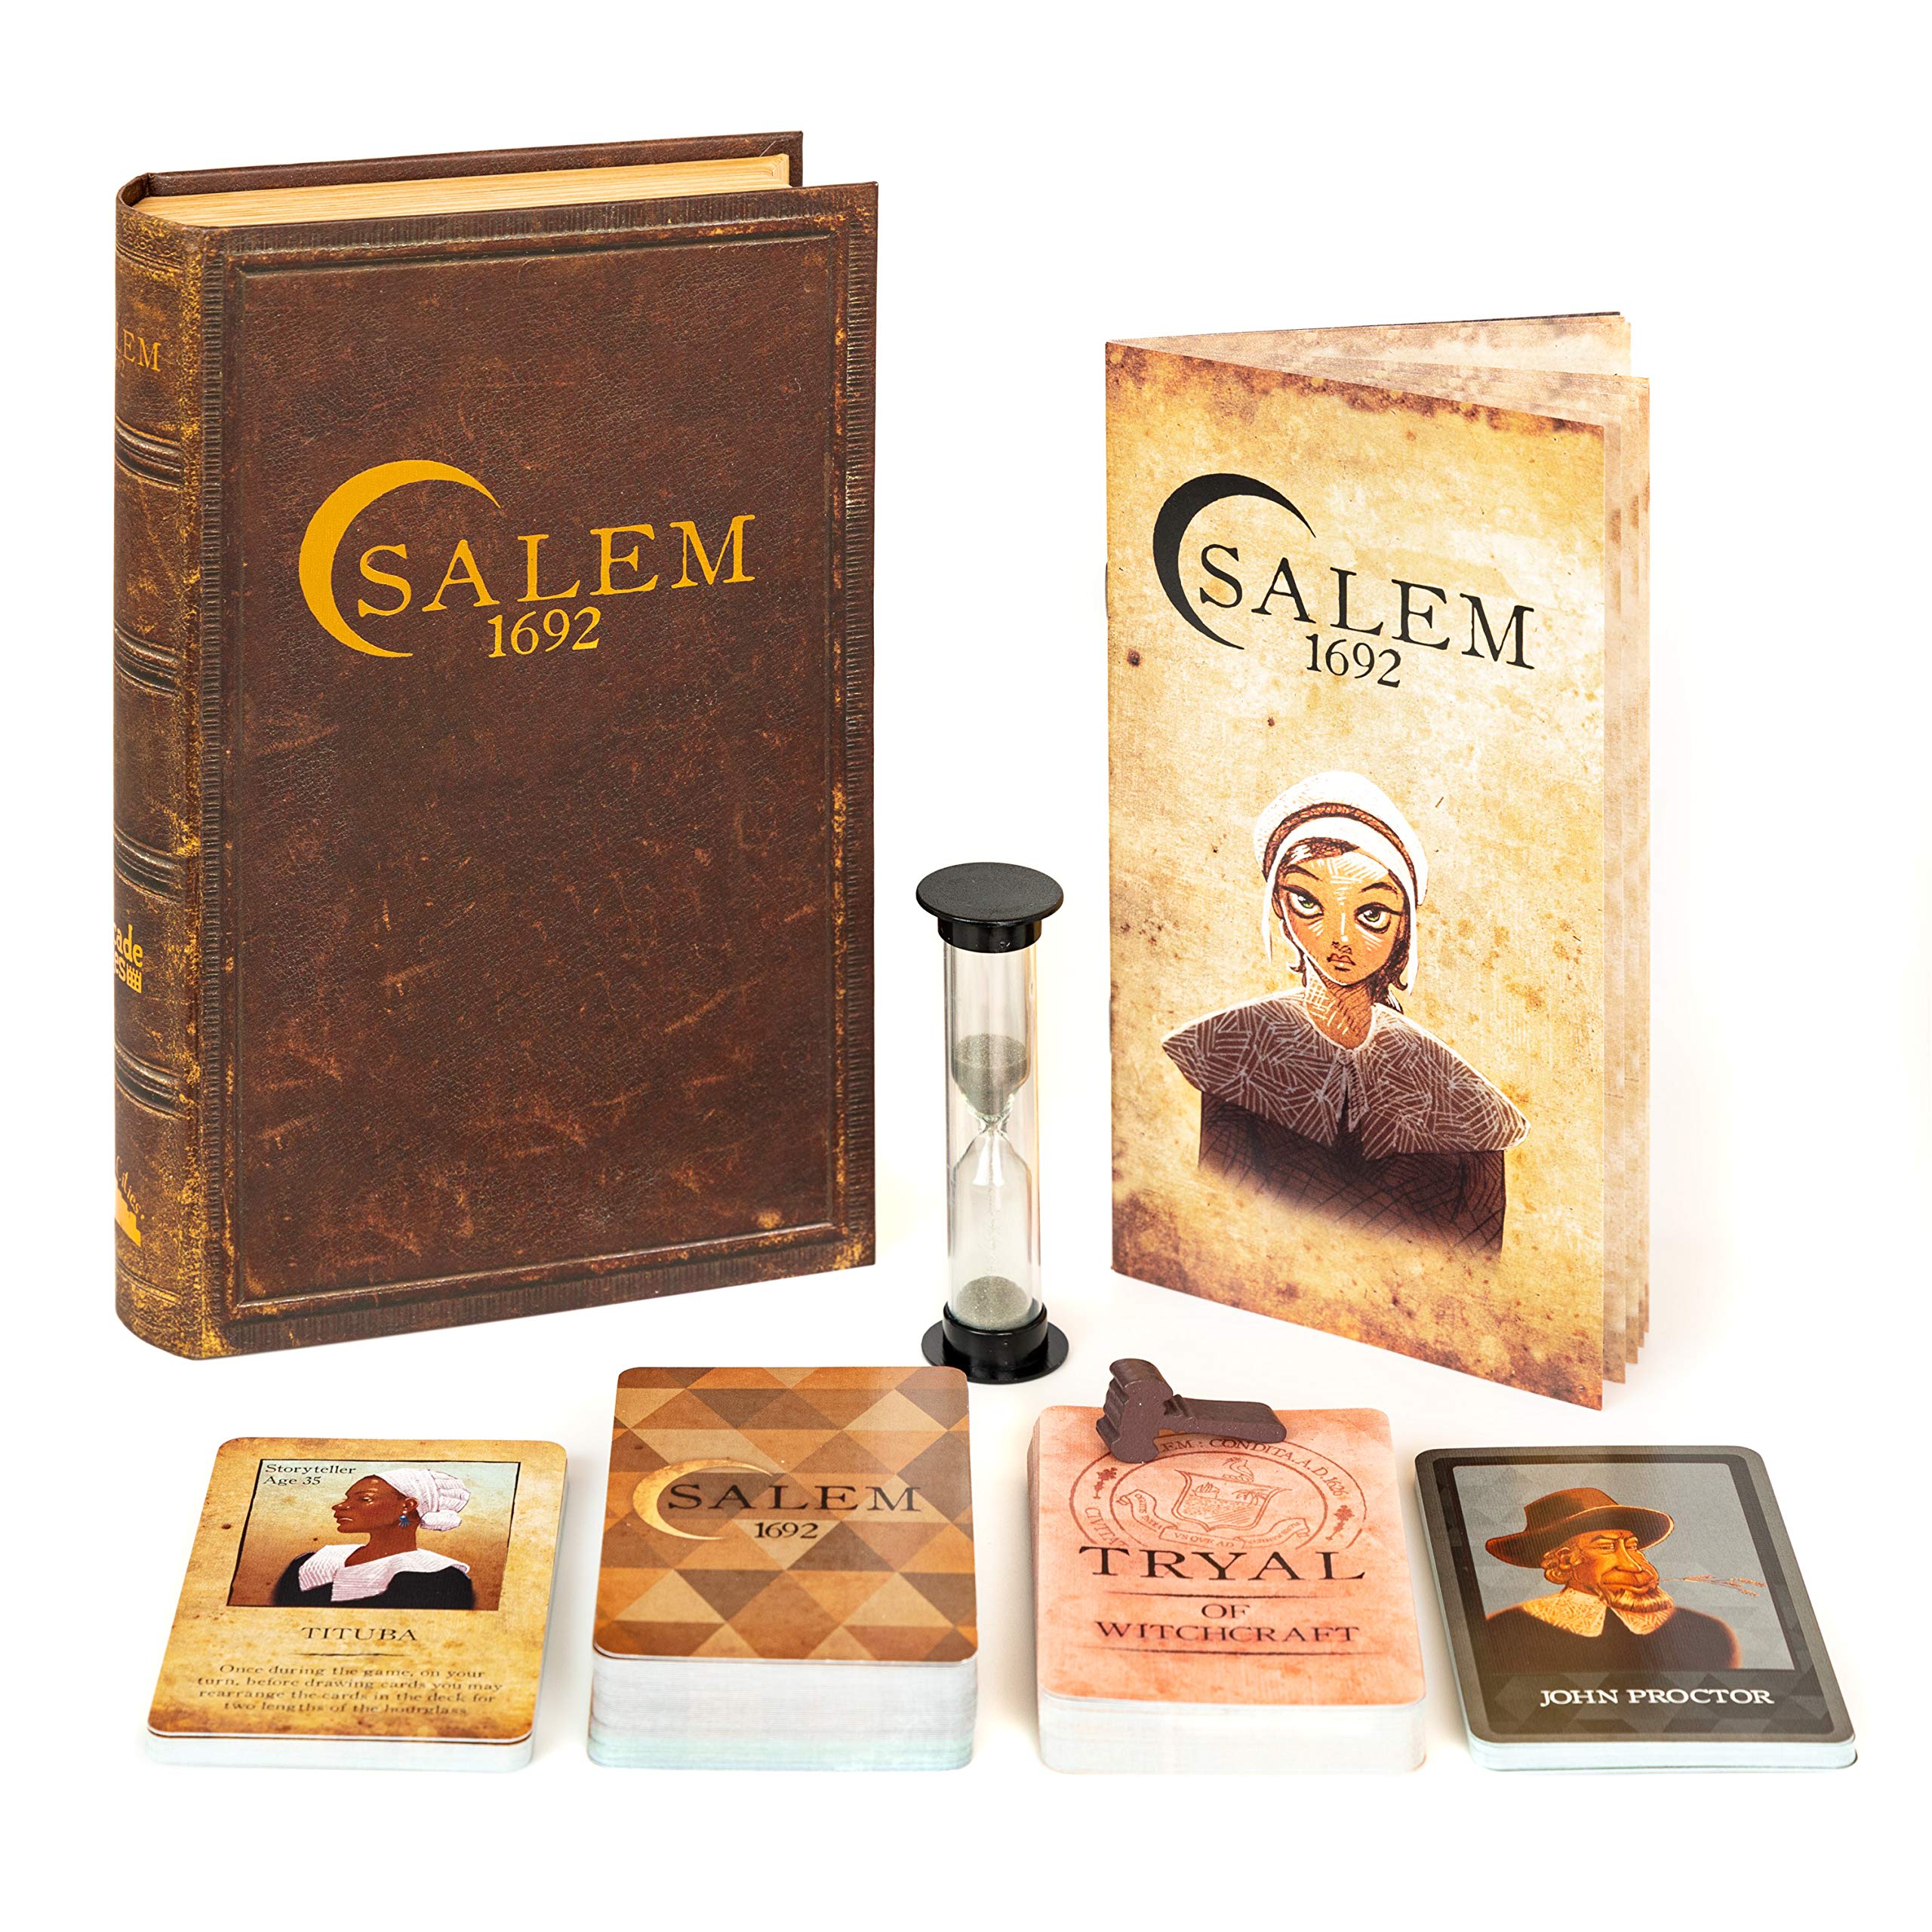 Salem 1692-review-thailand